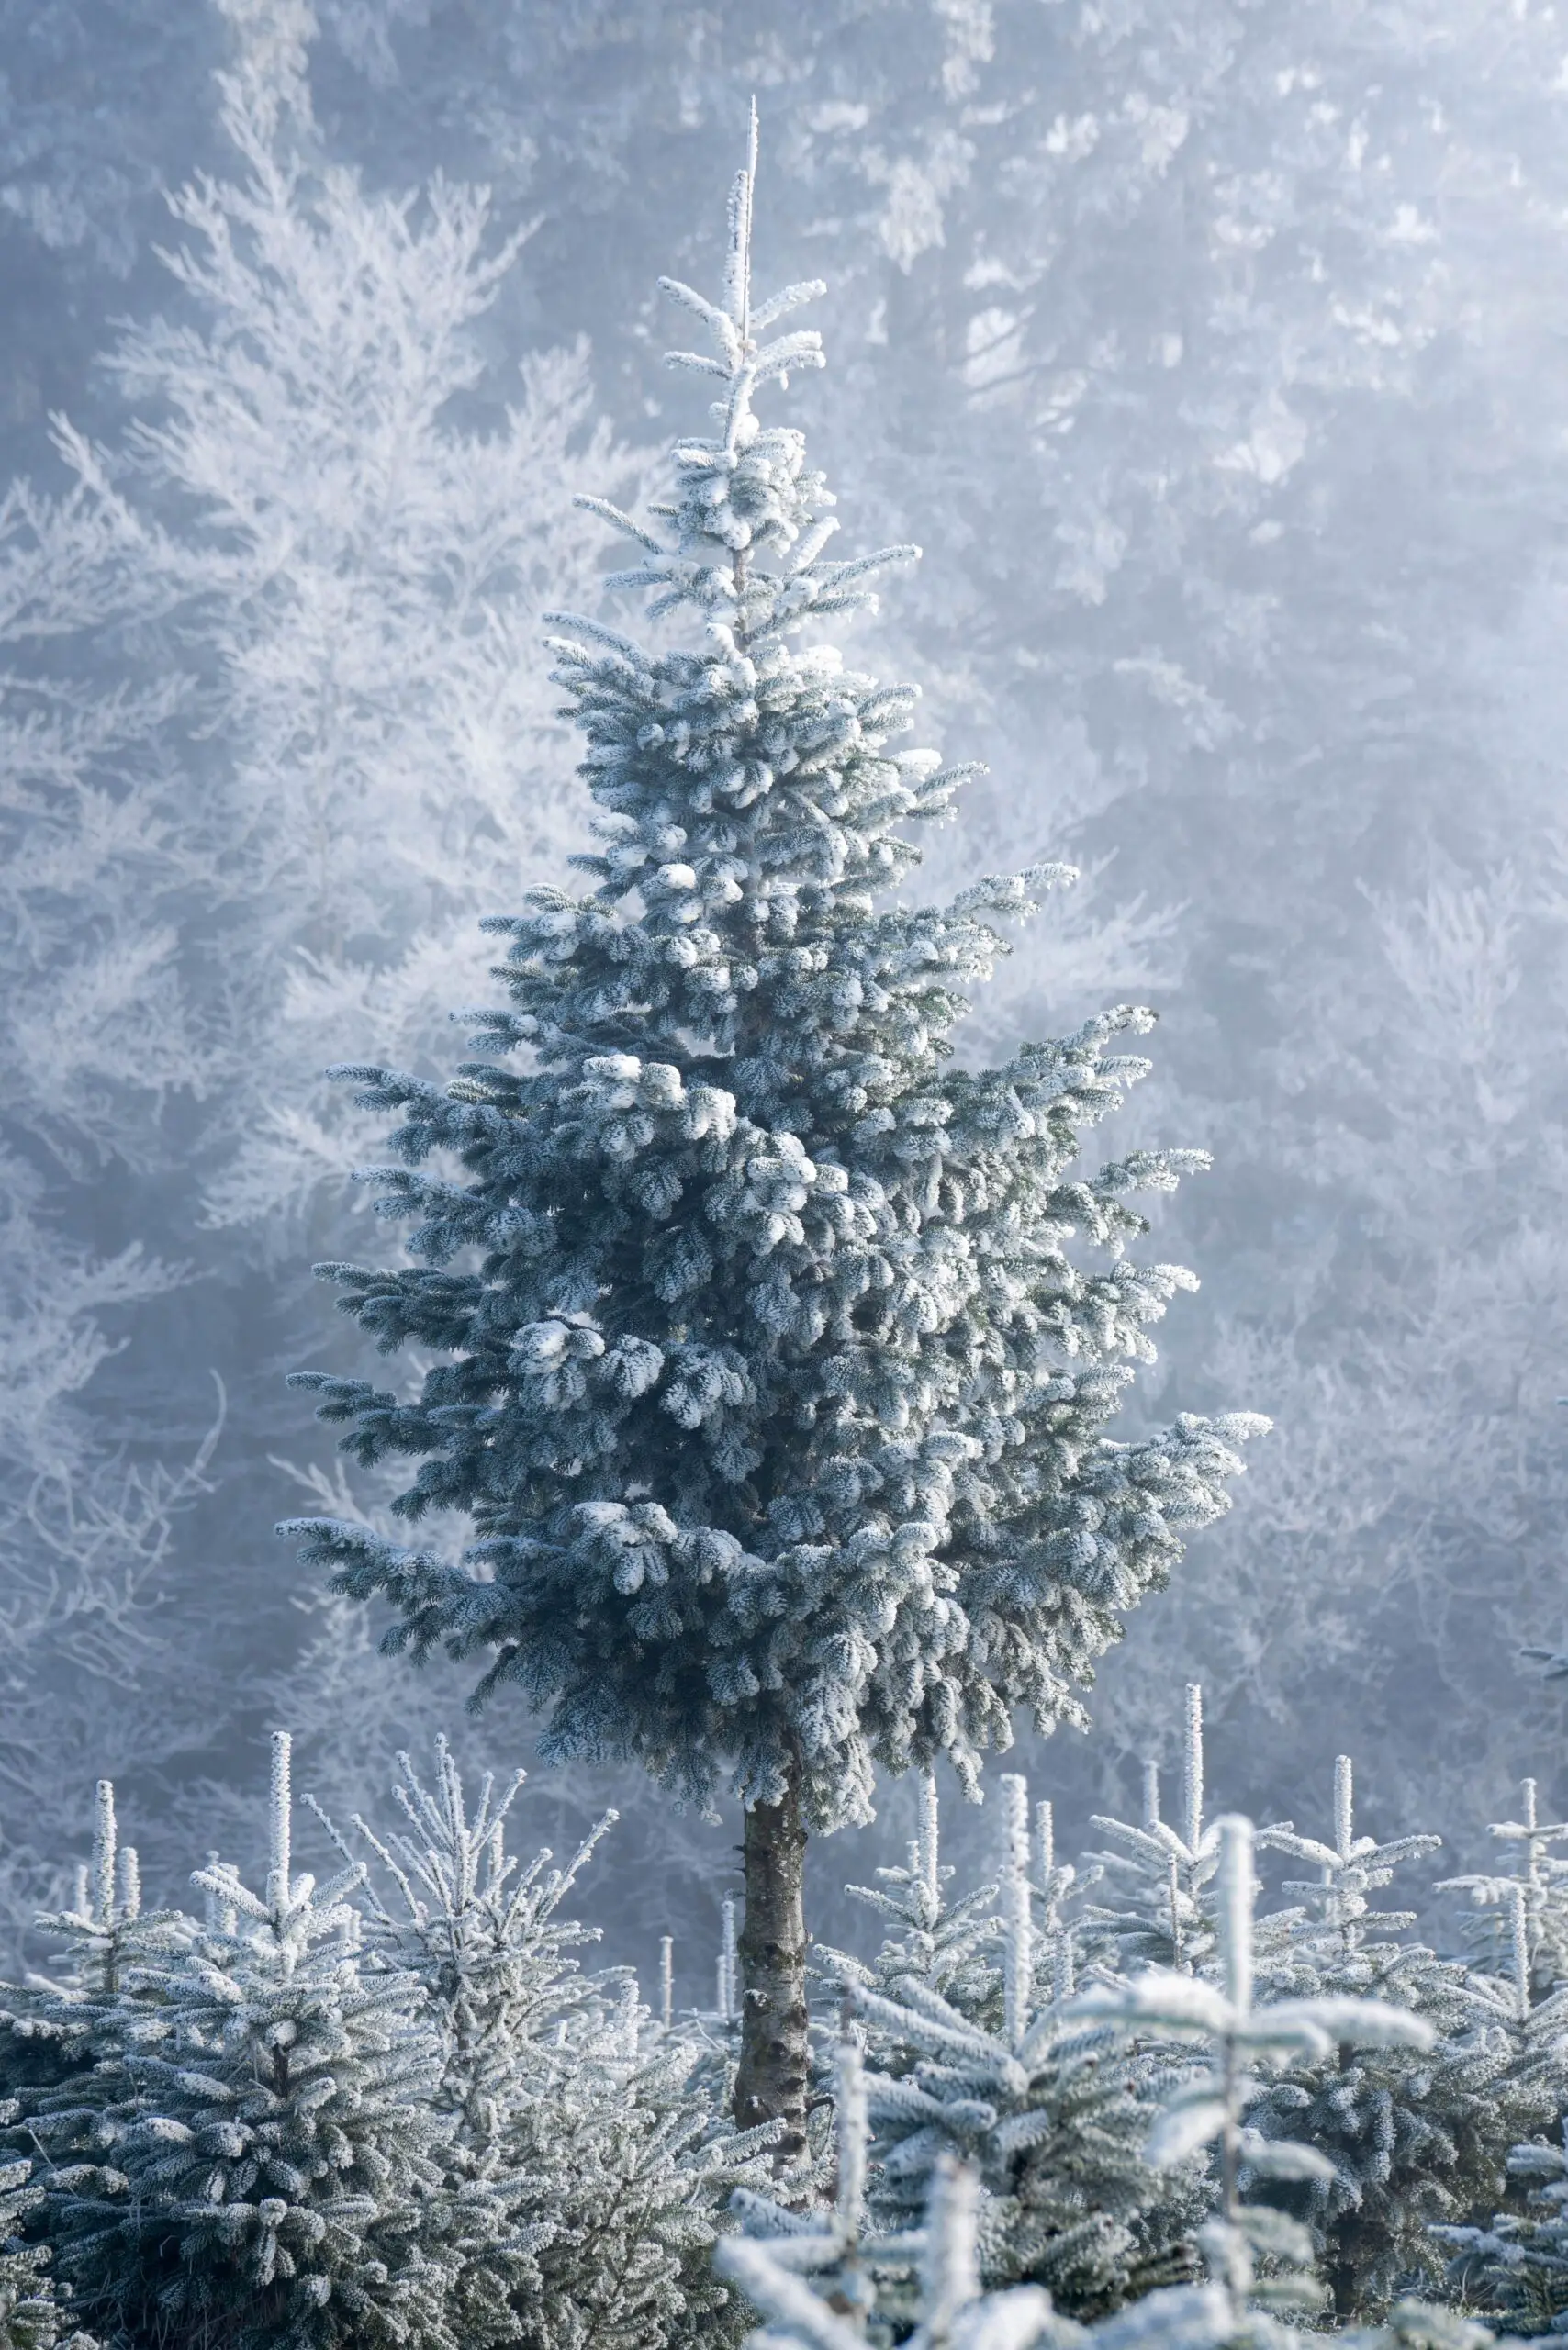 La tradición pagana que dio origen al árbol de Navidad decorado